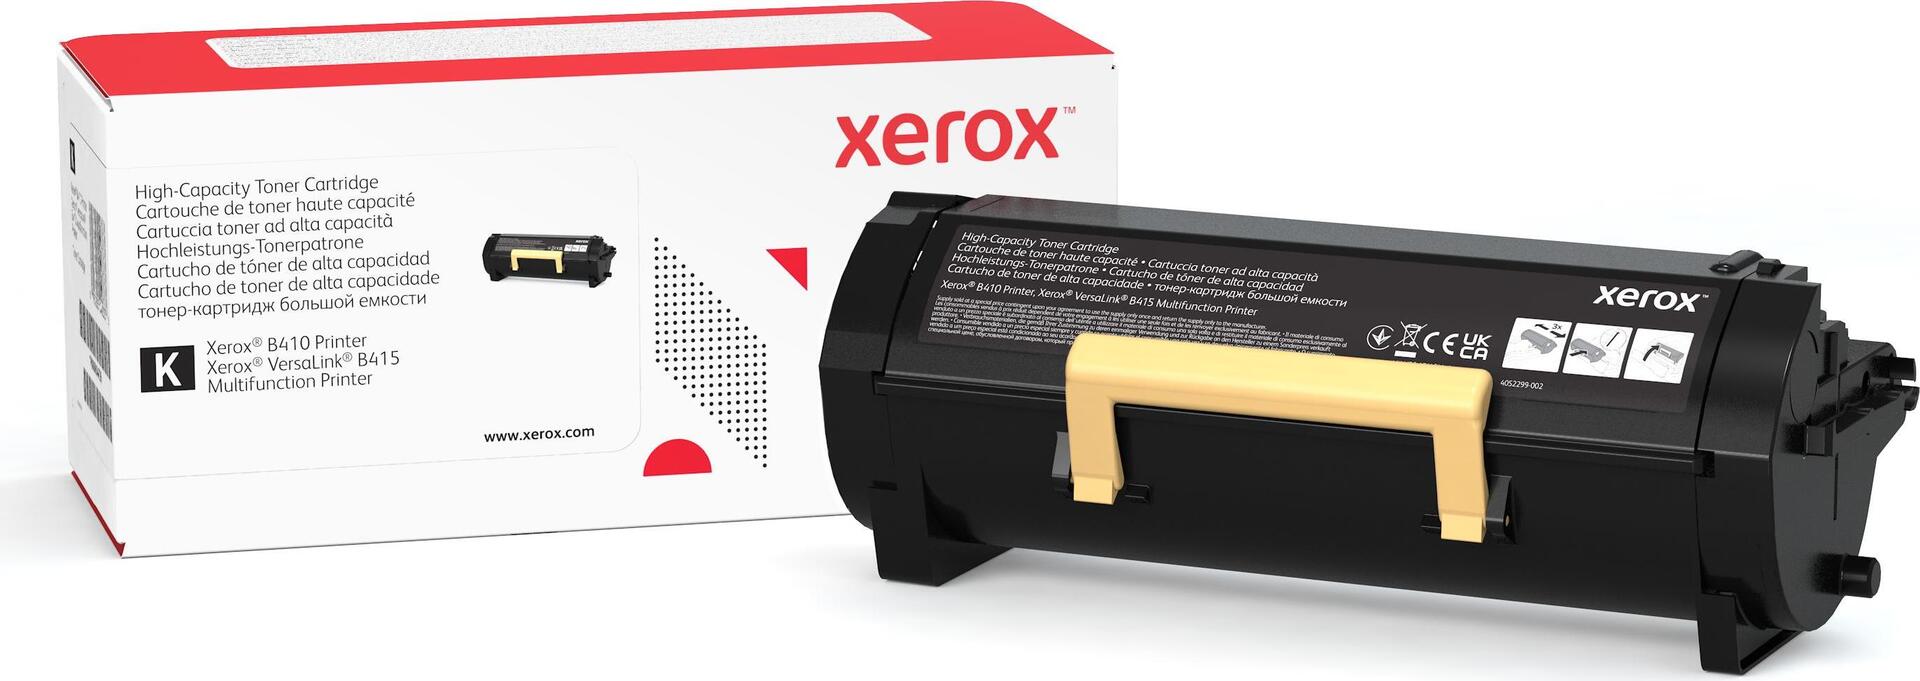 Xerox Mit hoher Kapazität (006R04726)